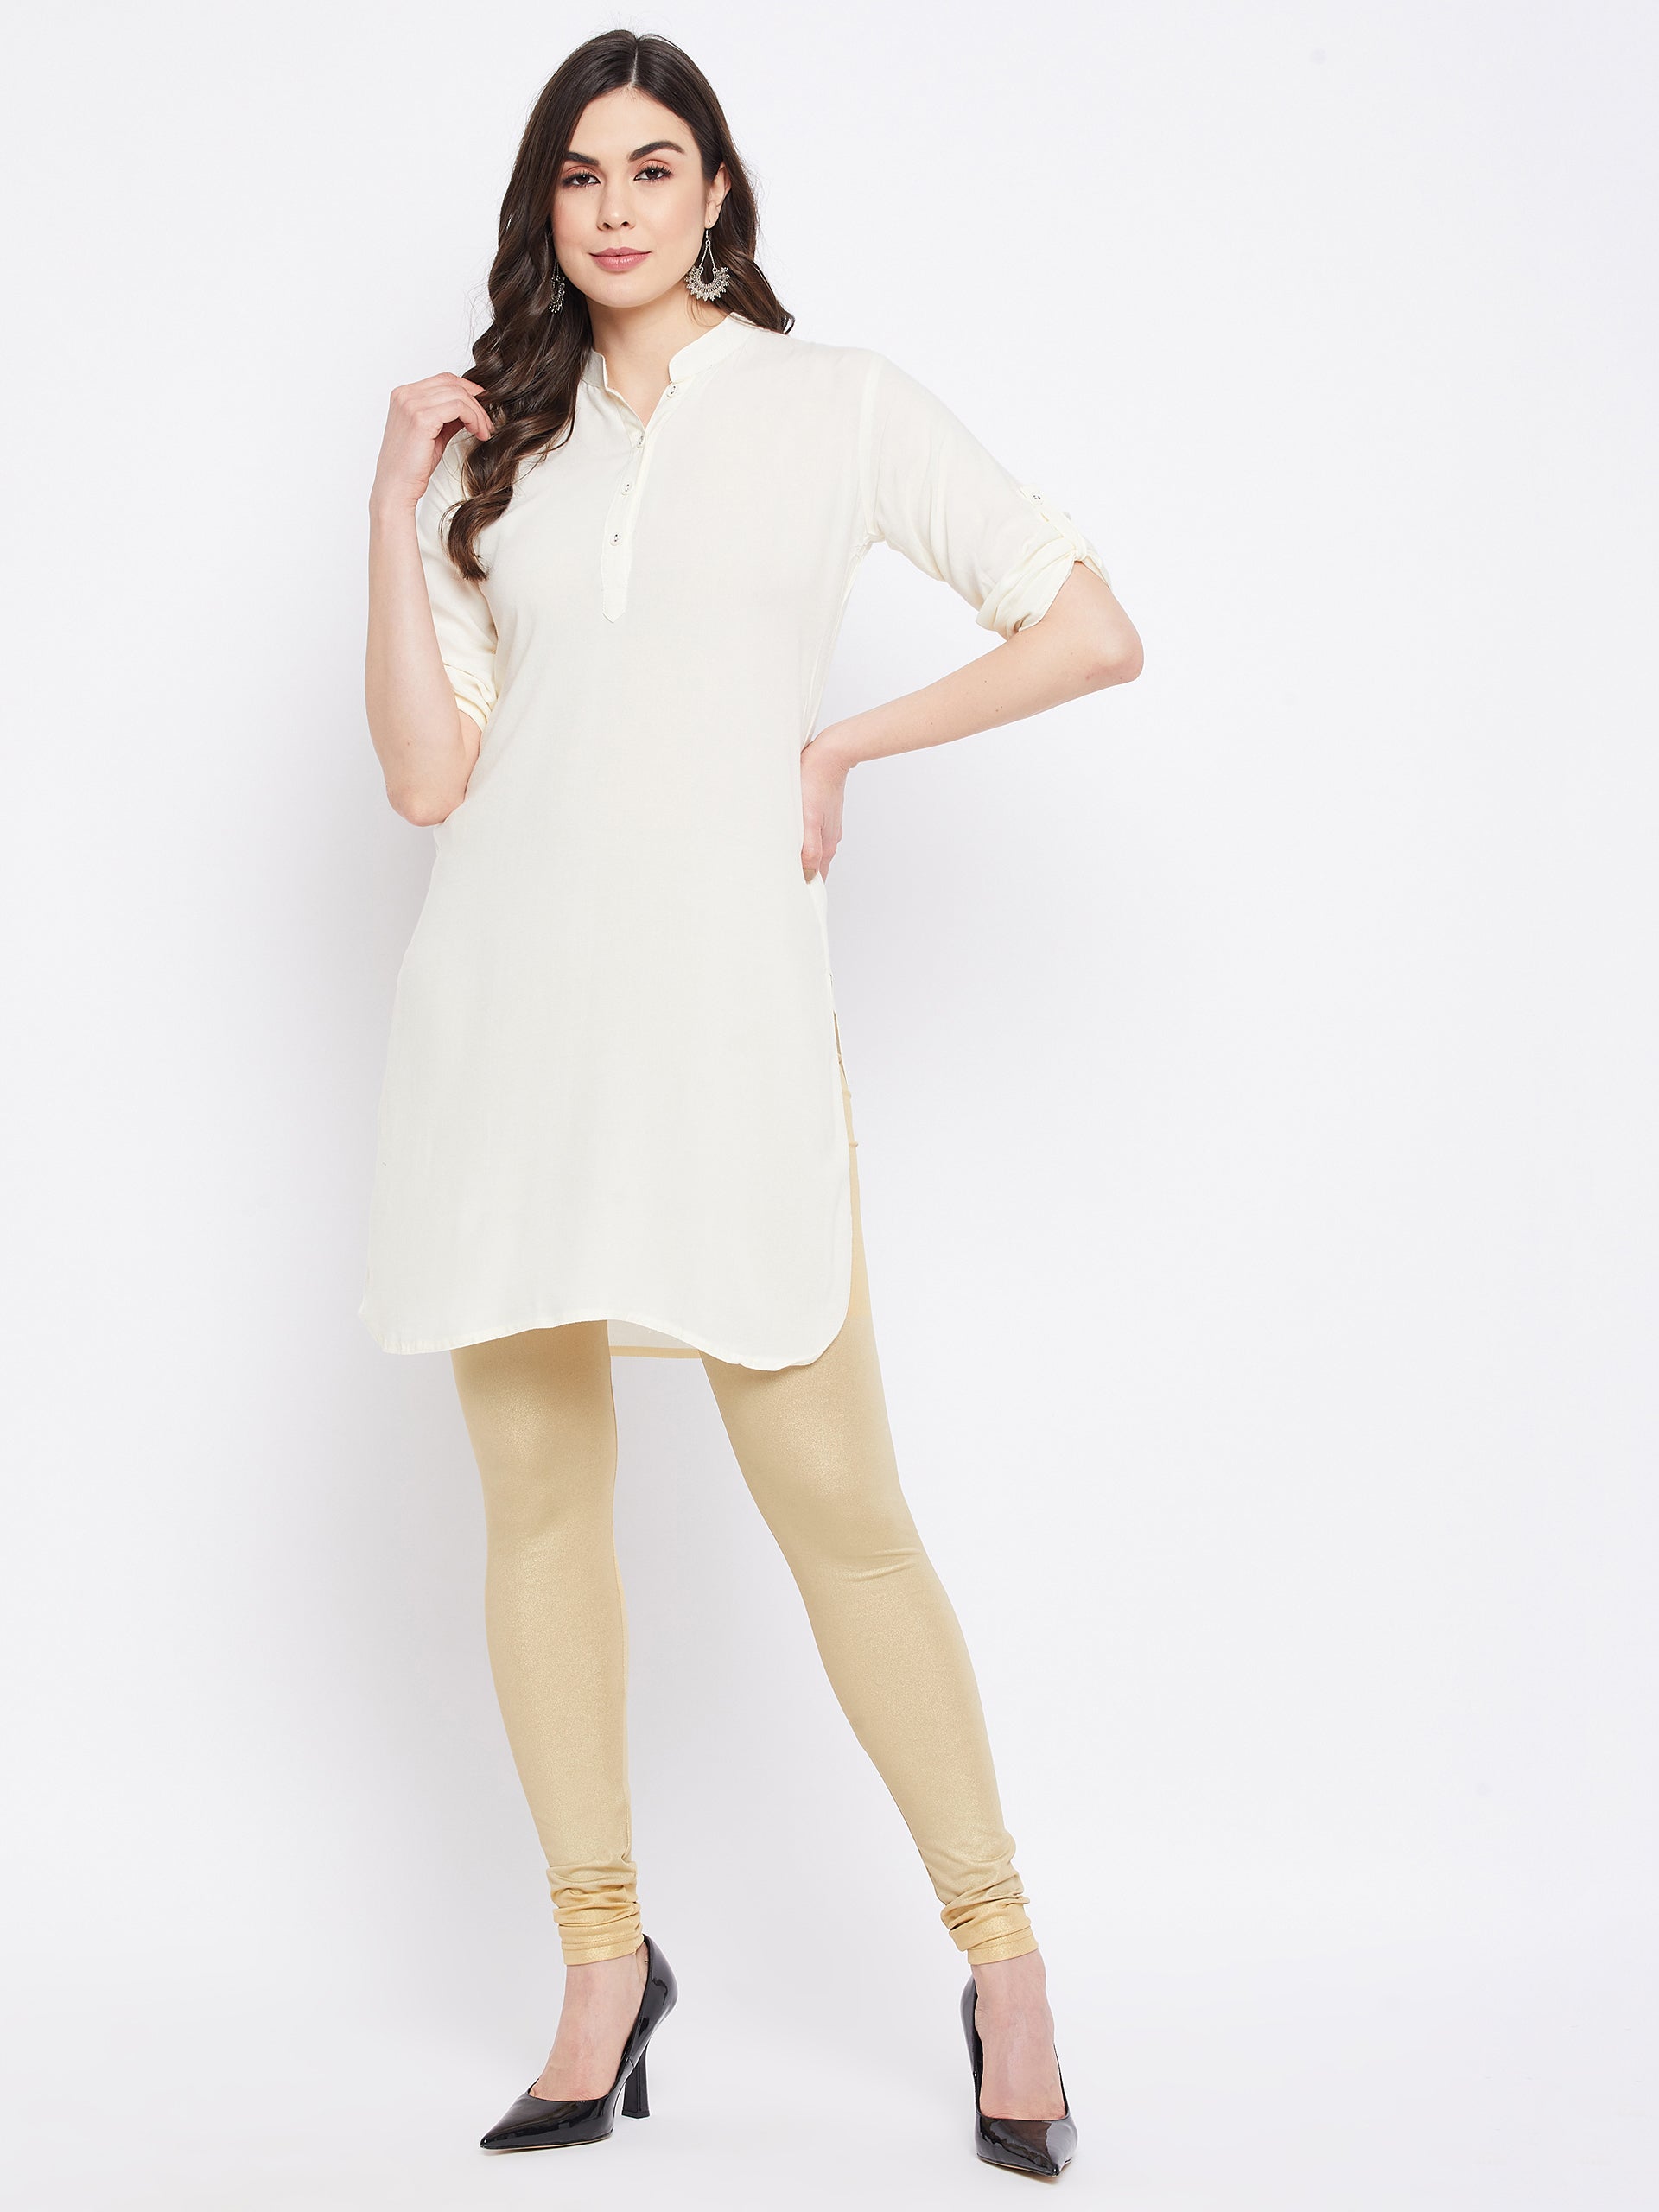 Shimmer Medium Gold Leggings  shimmer leggings gold – The Pajama